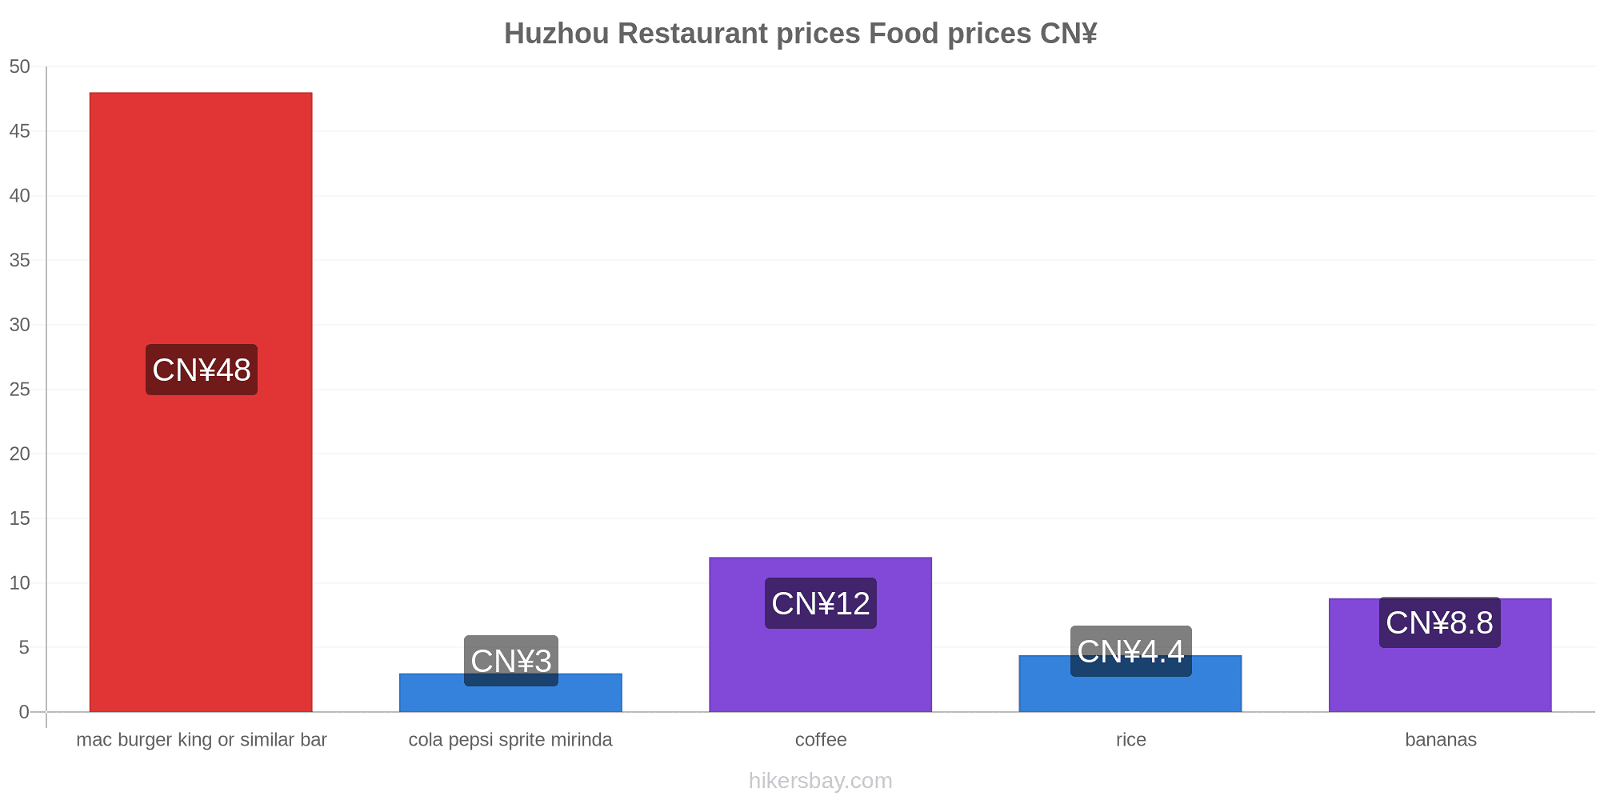 Huzhou price changes hikersbay.com